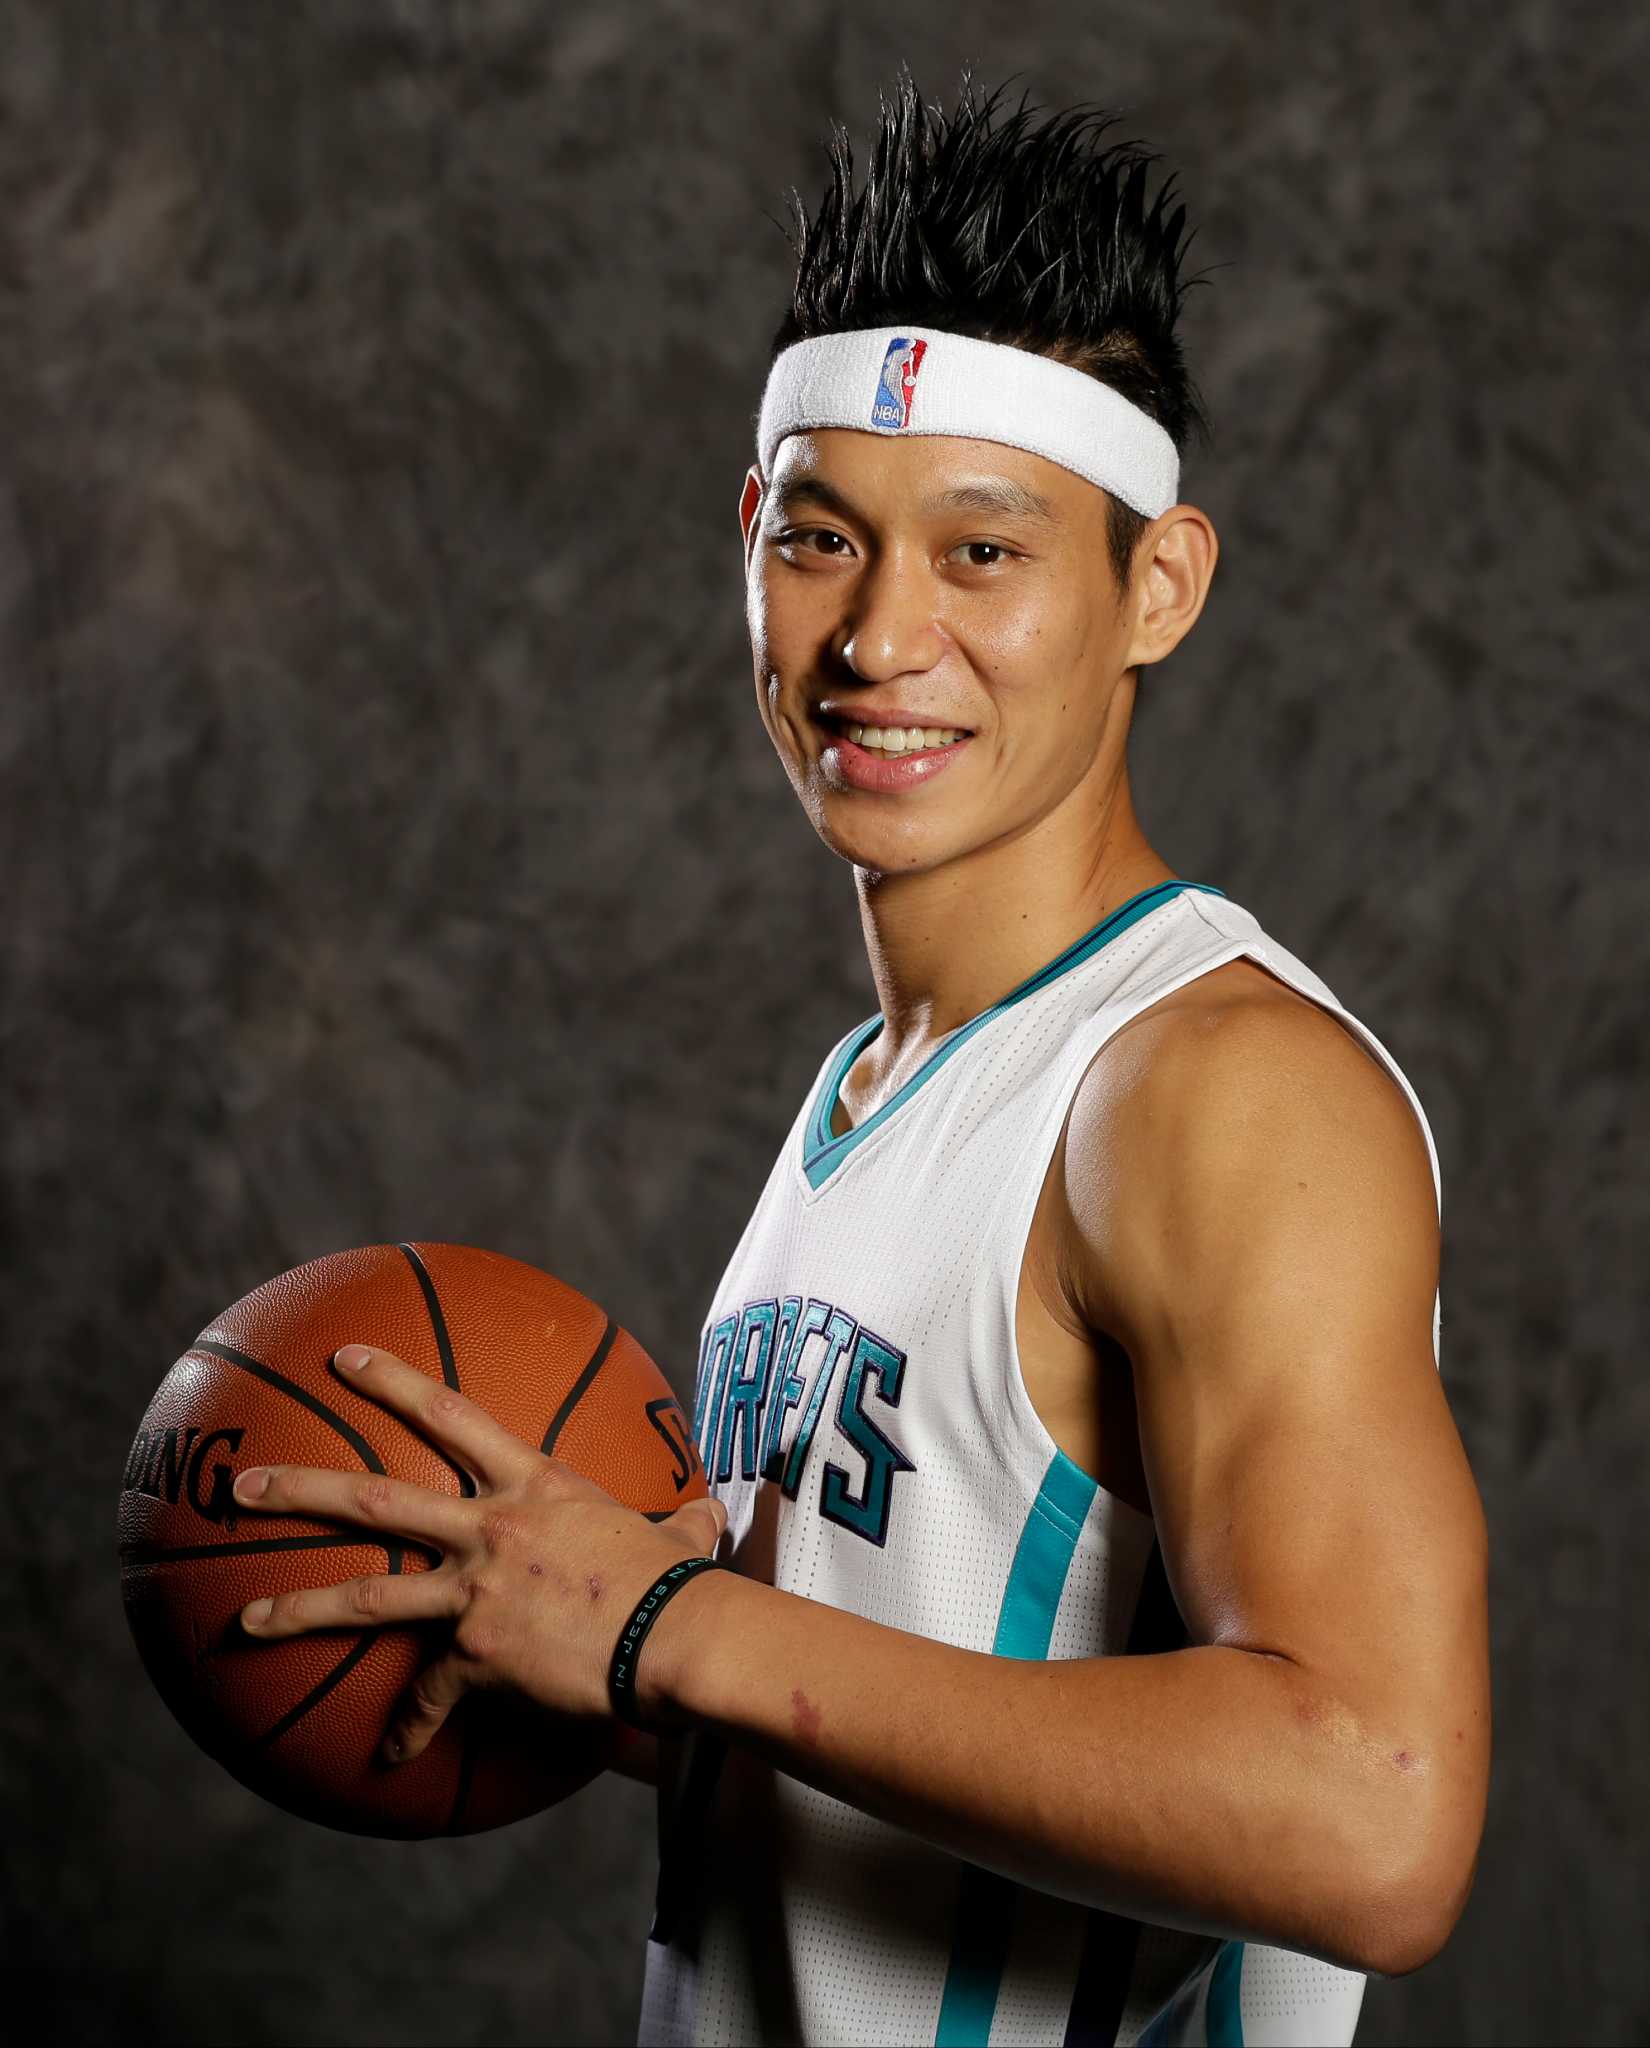 Jeremy Lin rumors: Ex-Knicks, Nets, Raptors guard heading overseas